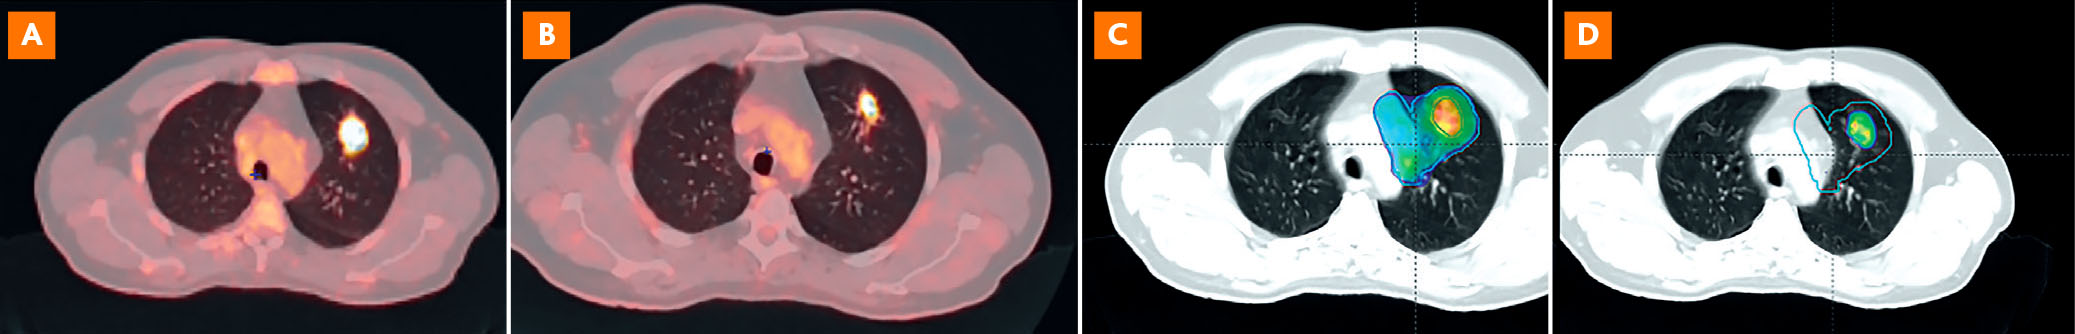 Apport de l’imagerie TEP dans la radiothérapie des cancers du poumon - Figure 2